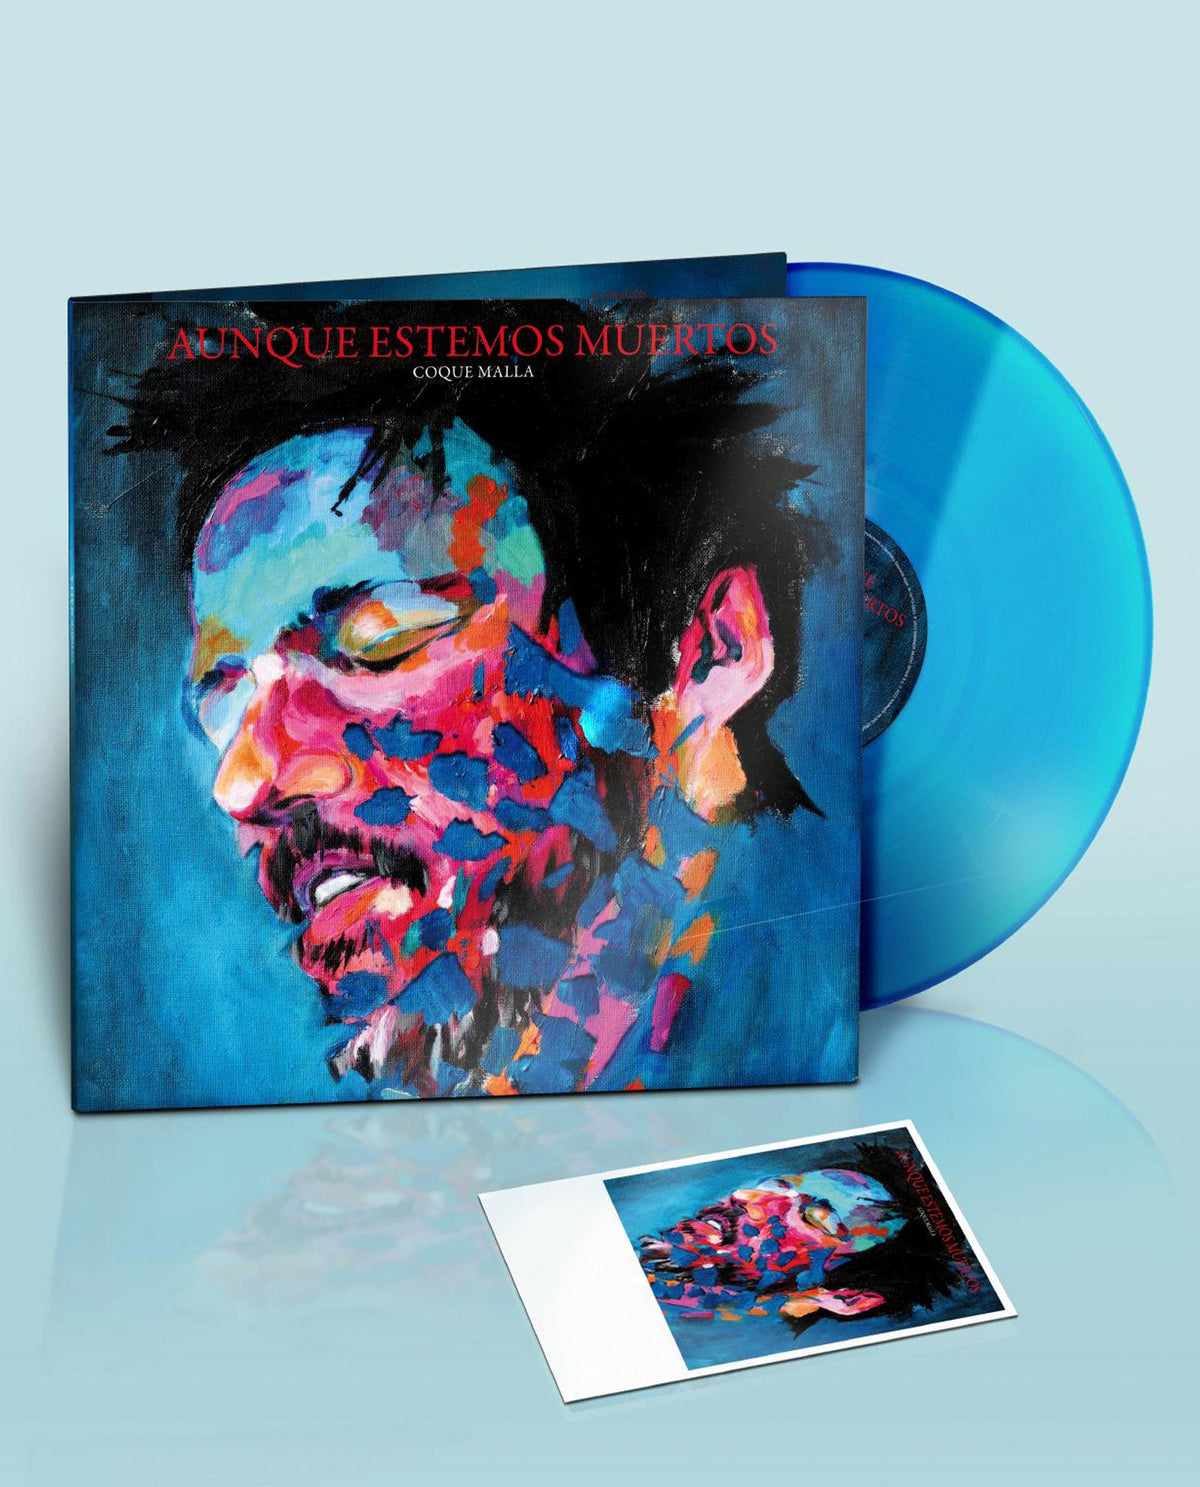 Coque Malla - LP Vinilo Azul + Postal Firmada "Aunque estemos muertos" - D2fy · Rocktud - Rocktud